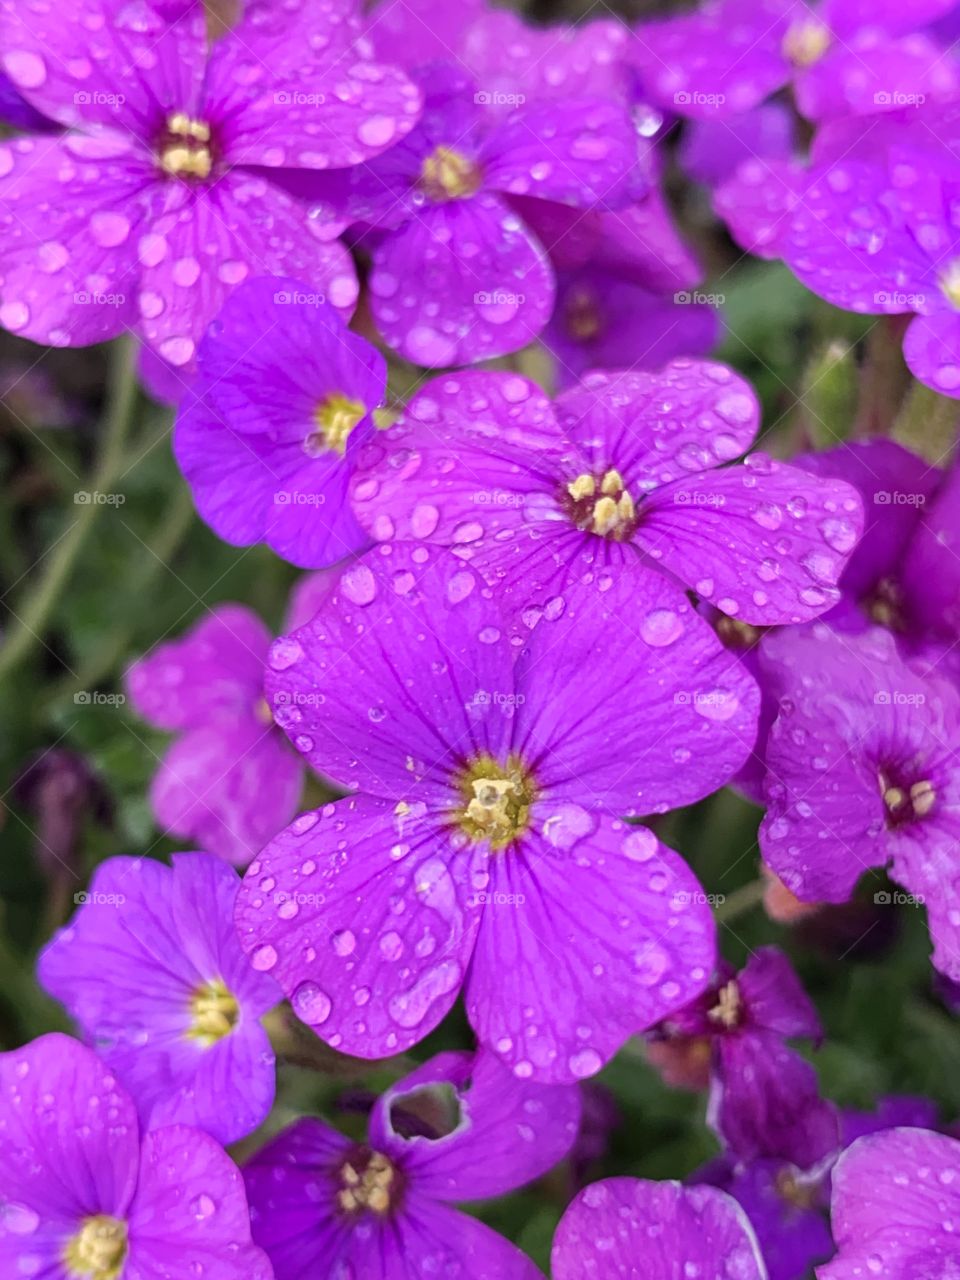 Moisture on purple flowers